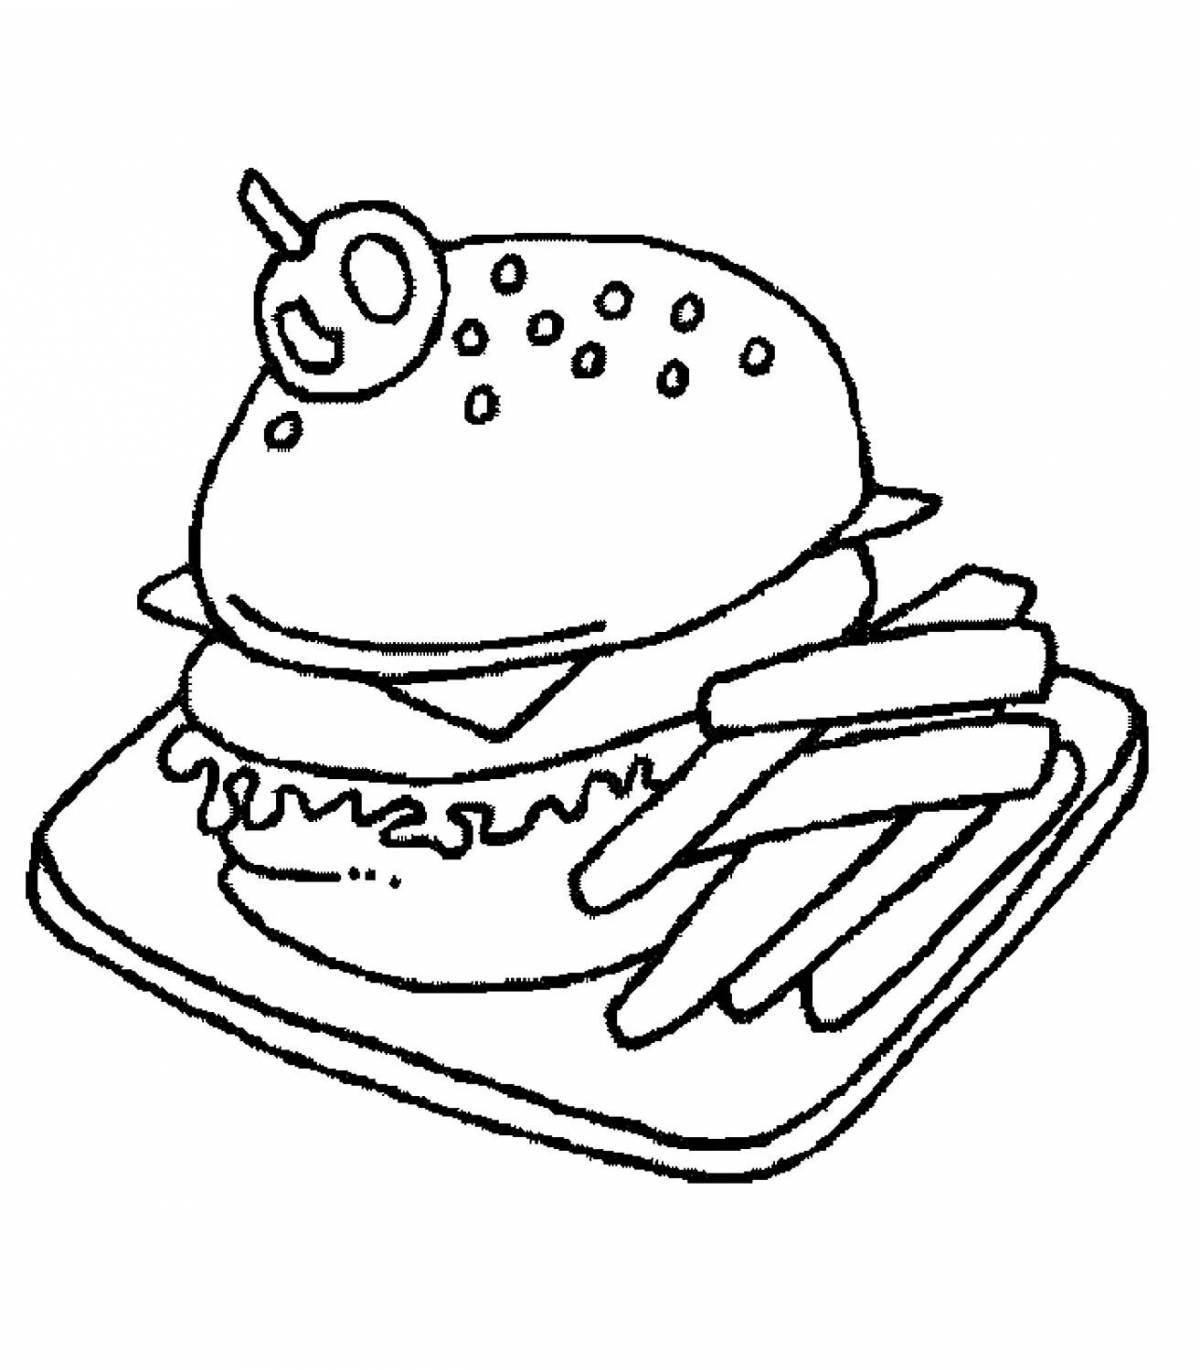 Увлекательная страница раскраски гамбургеров для детей